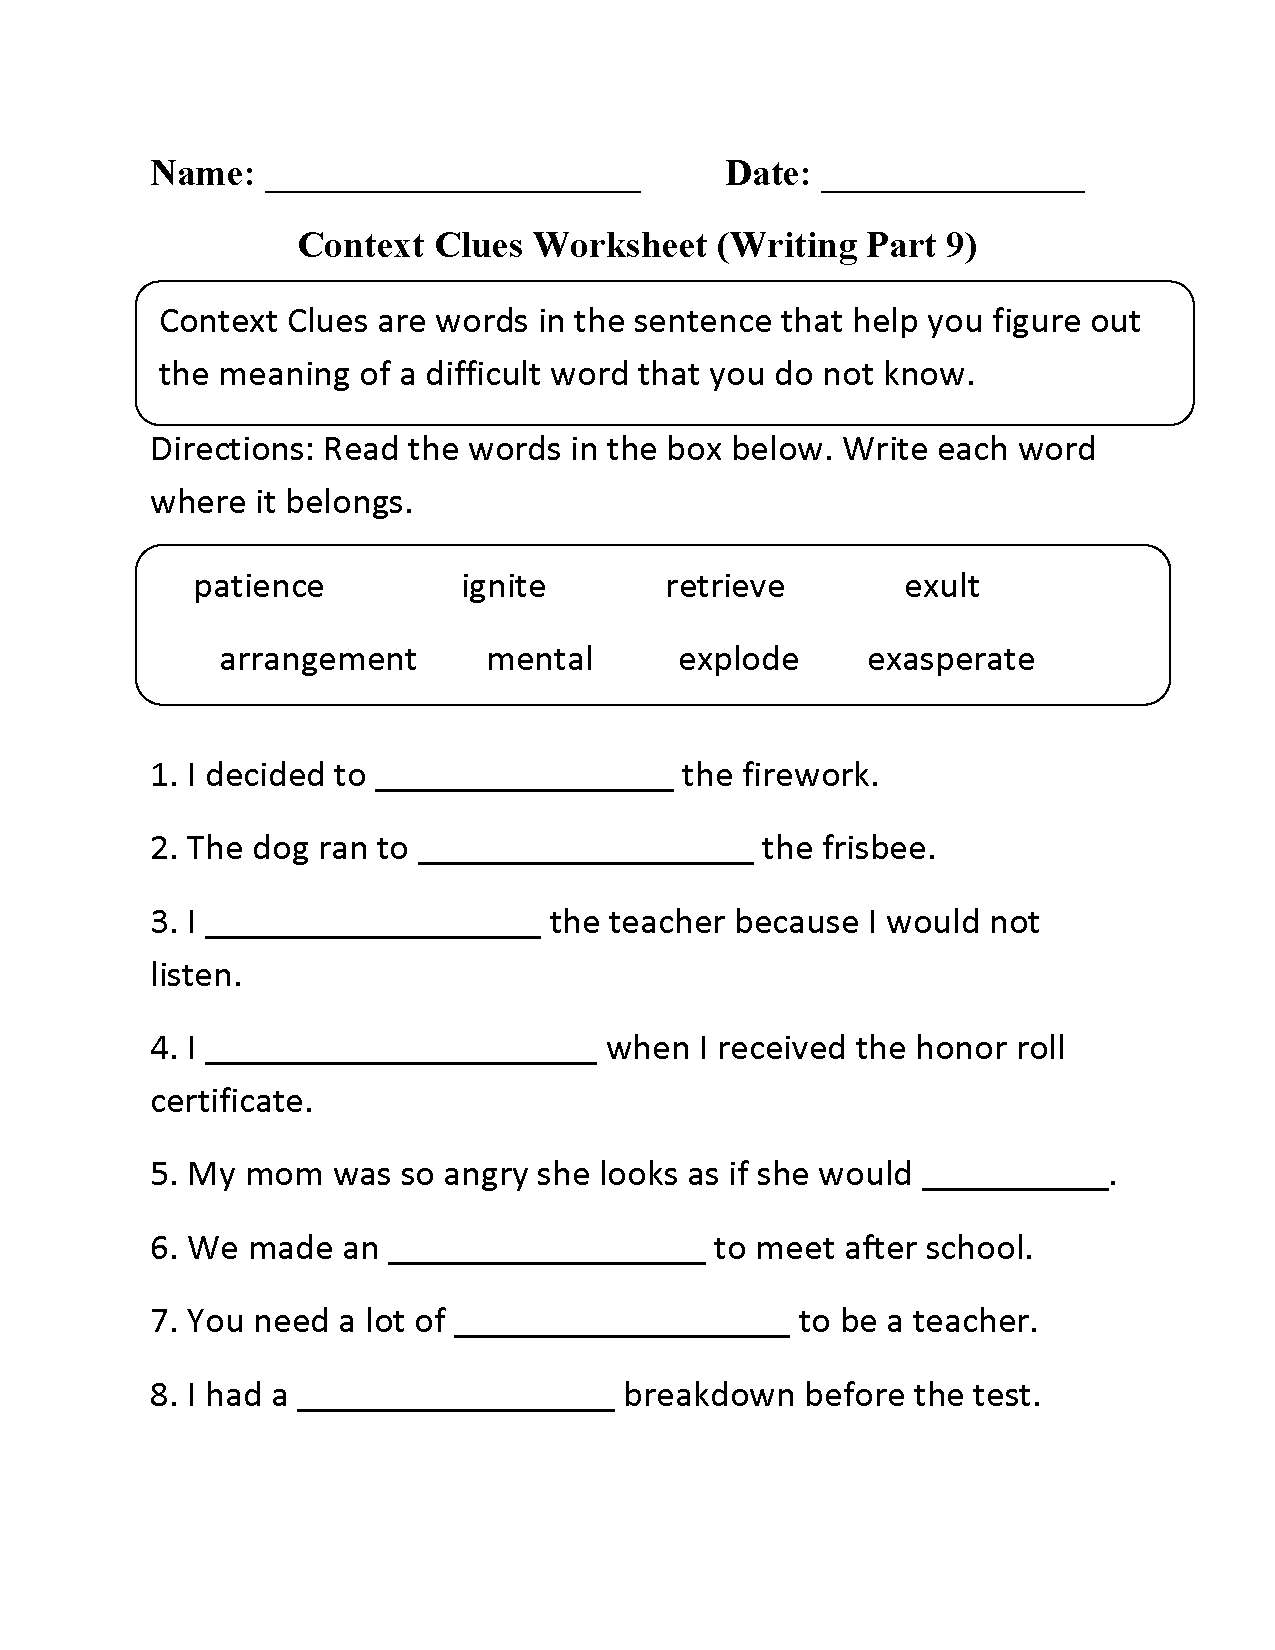 Englishlinx com Context Clues Worksheets